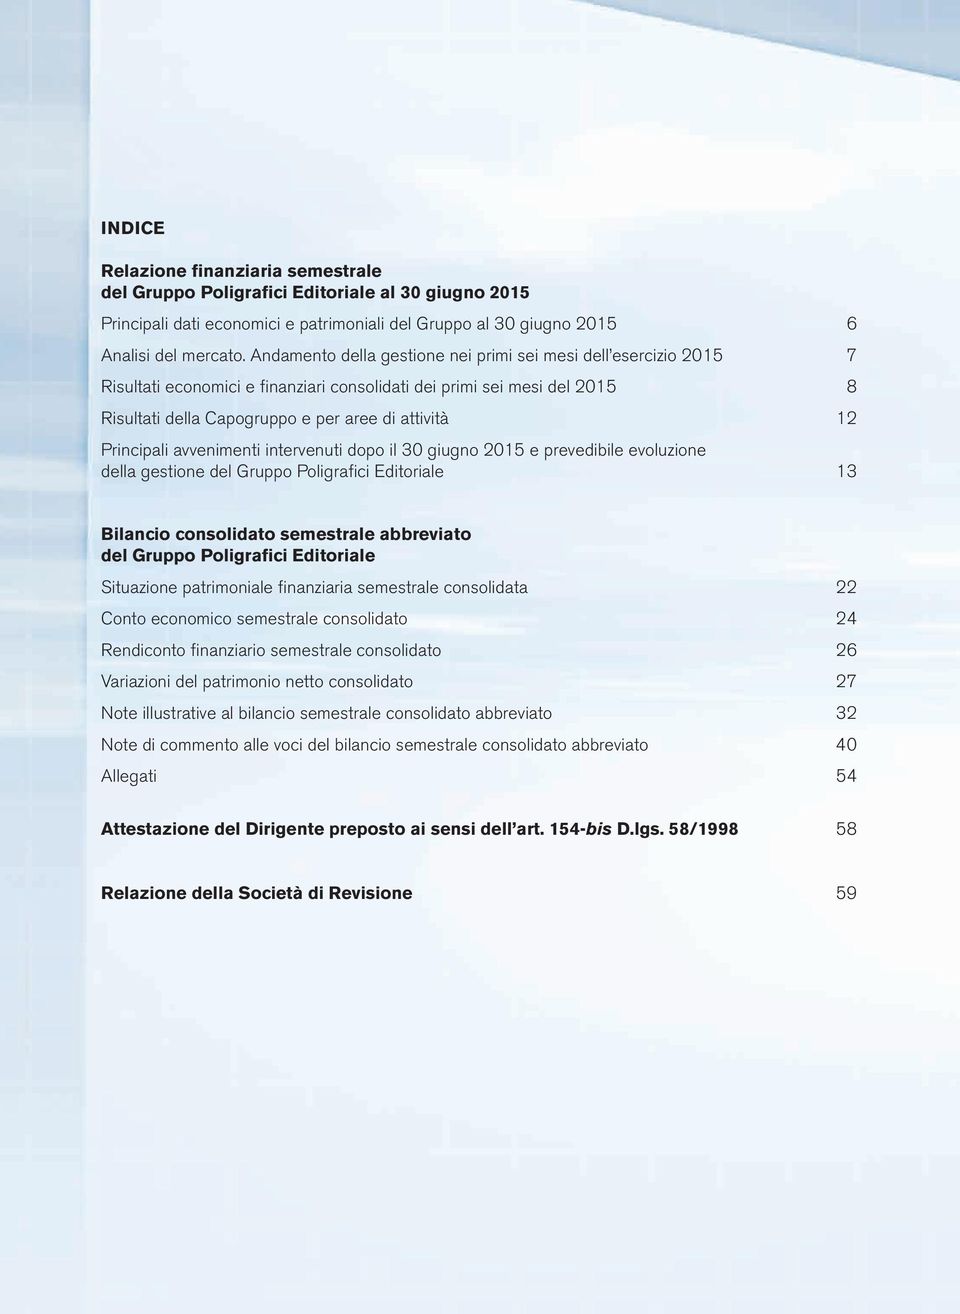 Principali avvenimenti intervenuti dopo il 30 giugno 2015 e prevedibile evoluzione della gestione del Gruppo Poligrafici Editoriale 13 Bilancio consolidato semestrale abbreviato del Gruppo